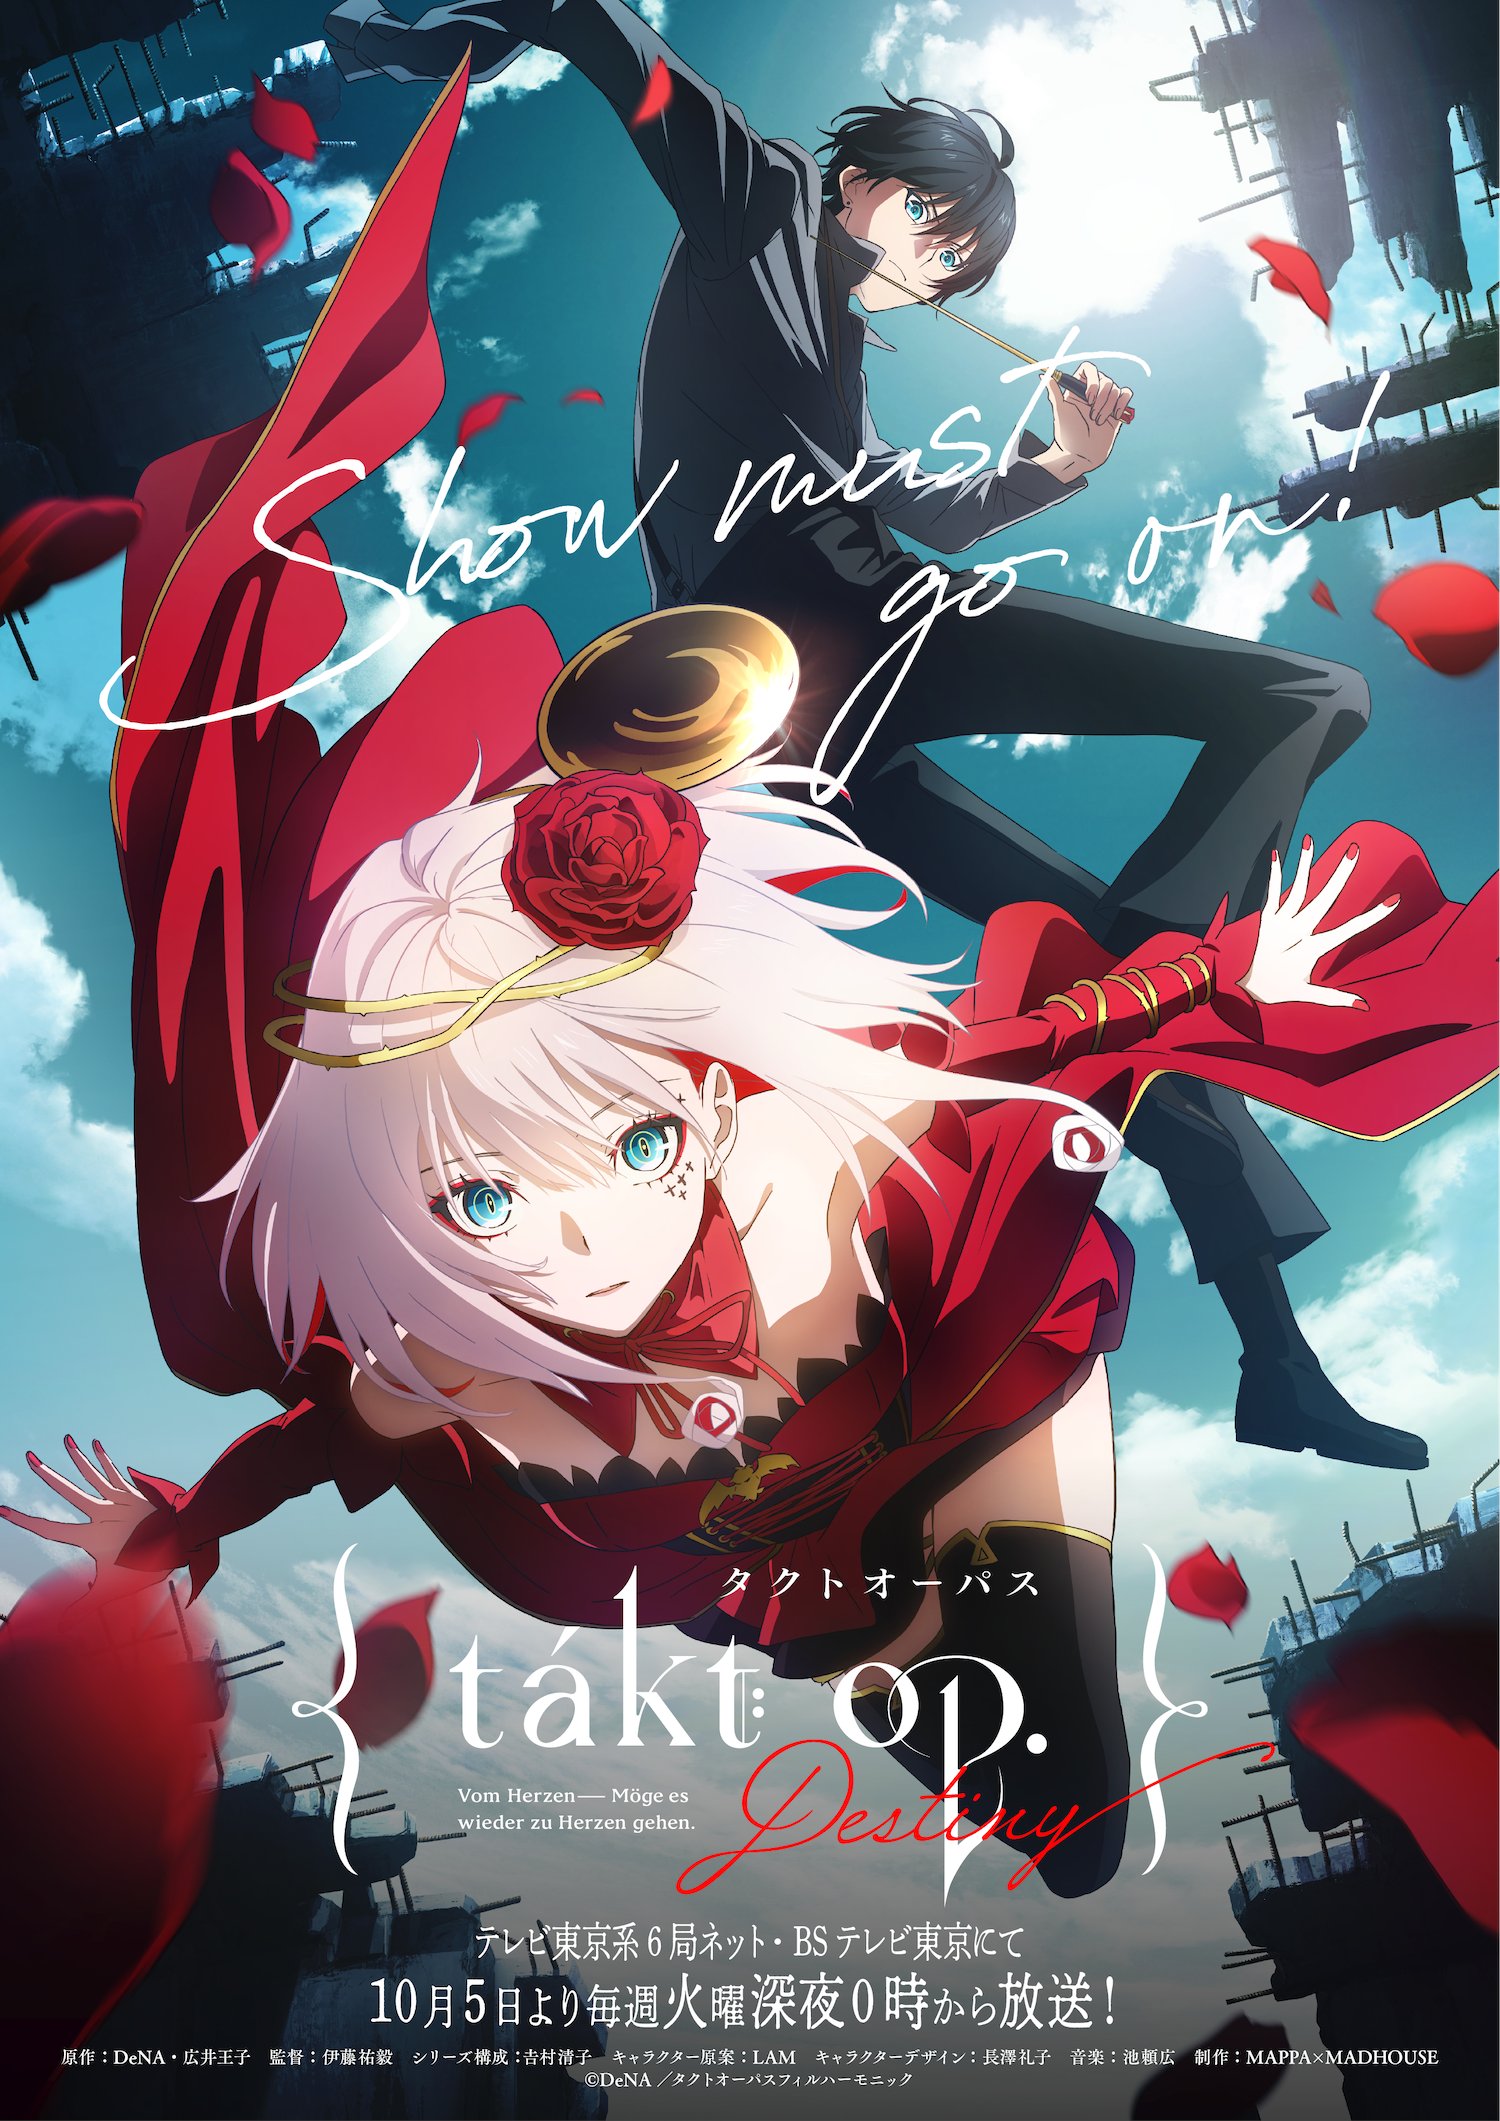 Poster Phim Takt Op. Destiny -タクトオーパス, Hepburn : Takuto Oopasu ()